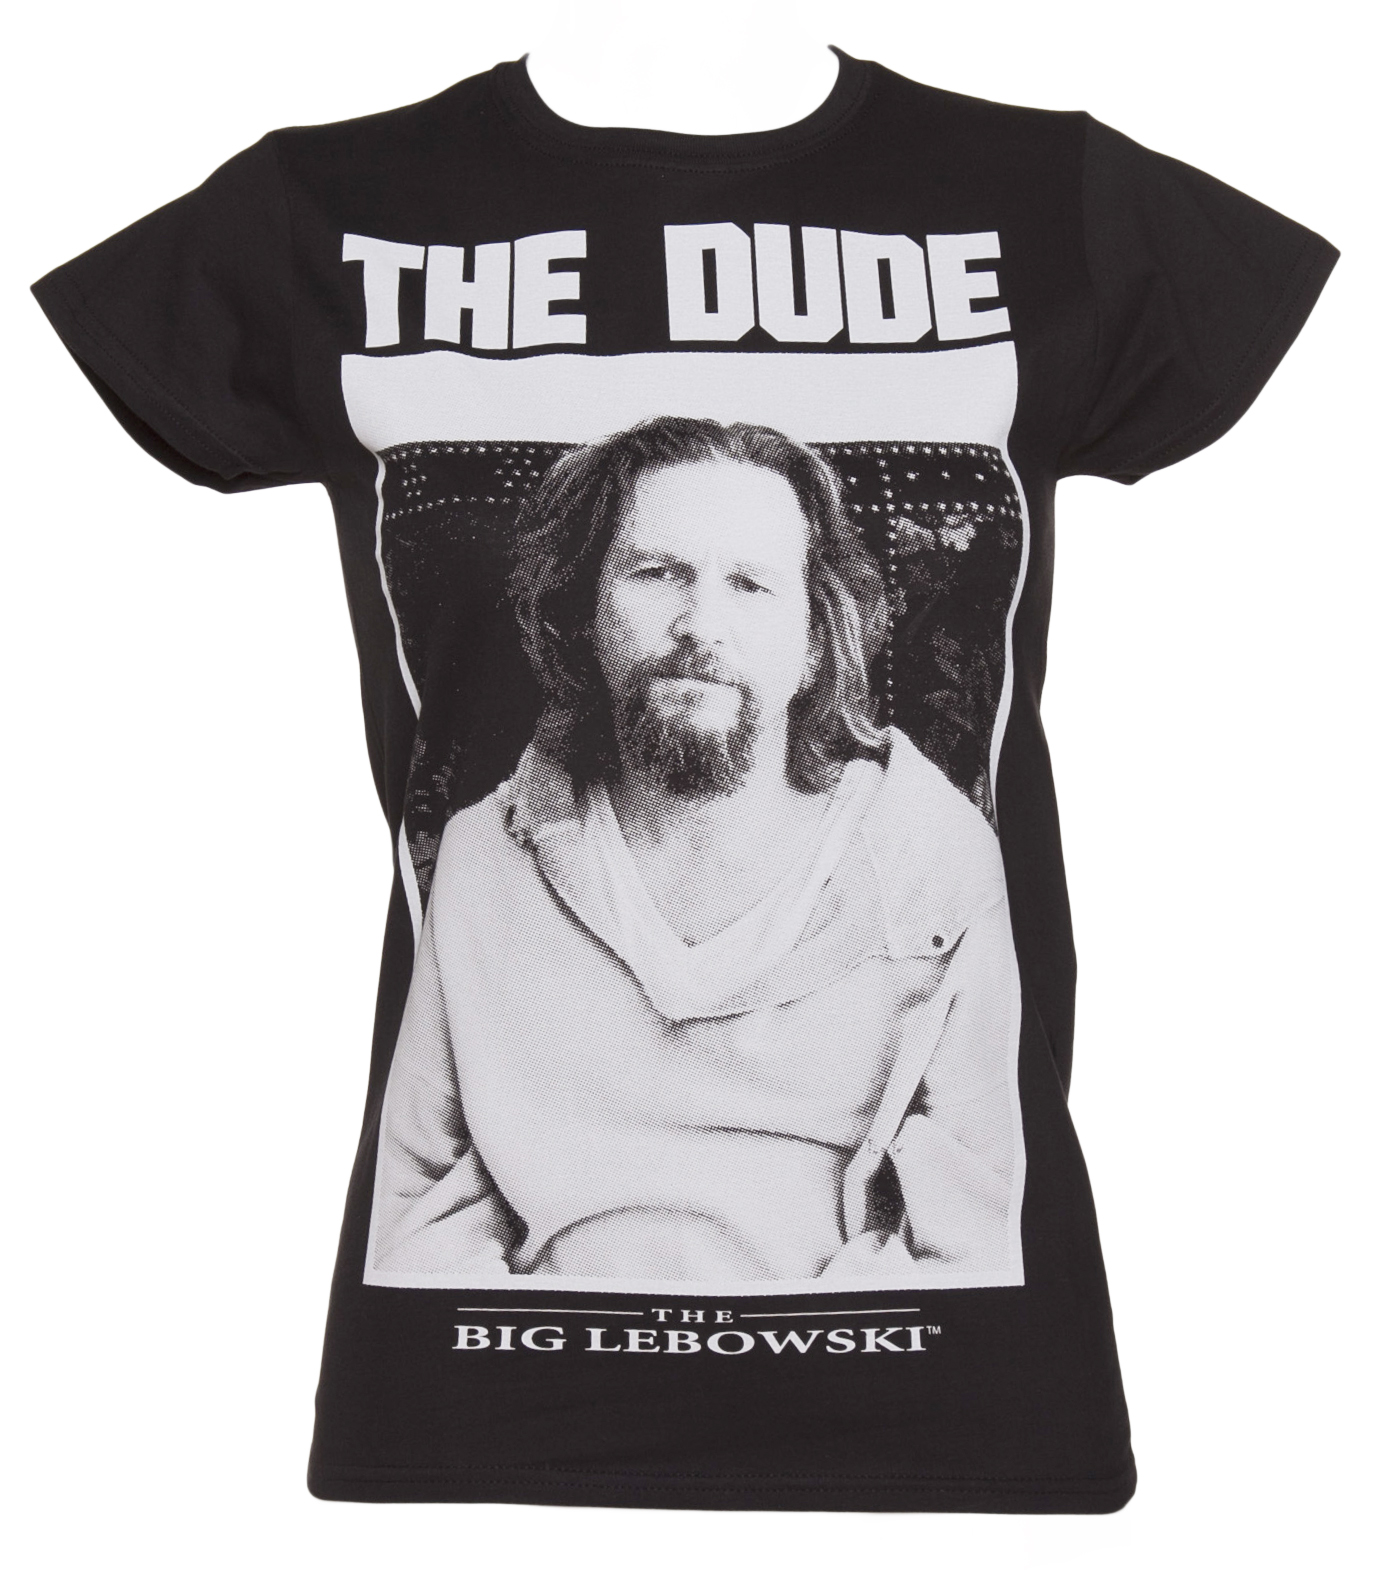 Ladies Black The Dude Big Lebowski T-Shirt